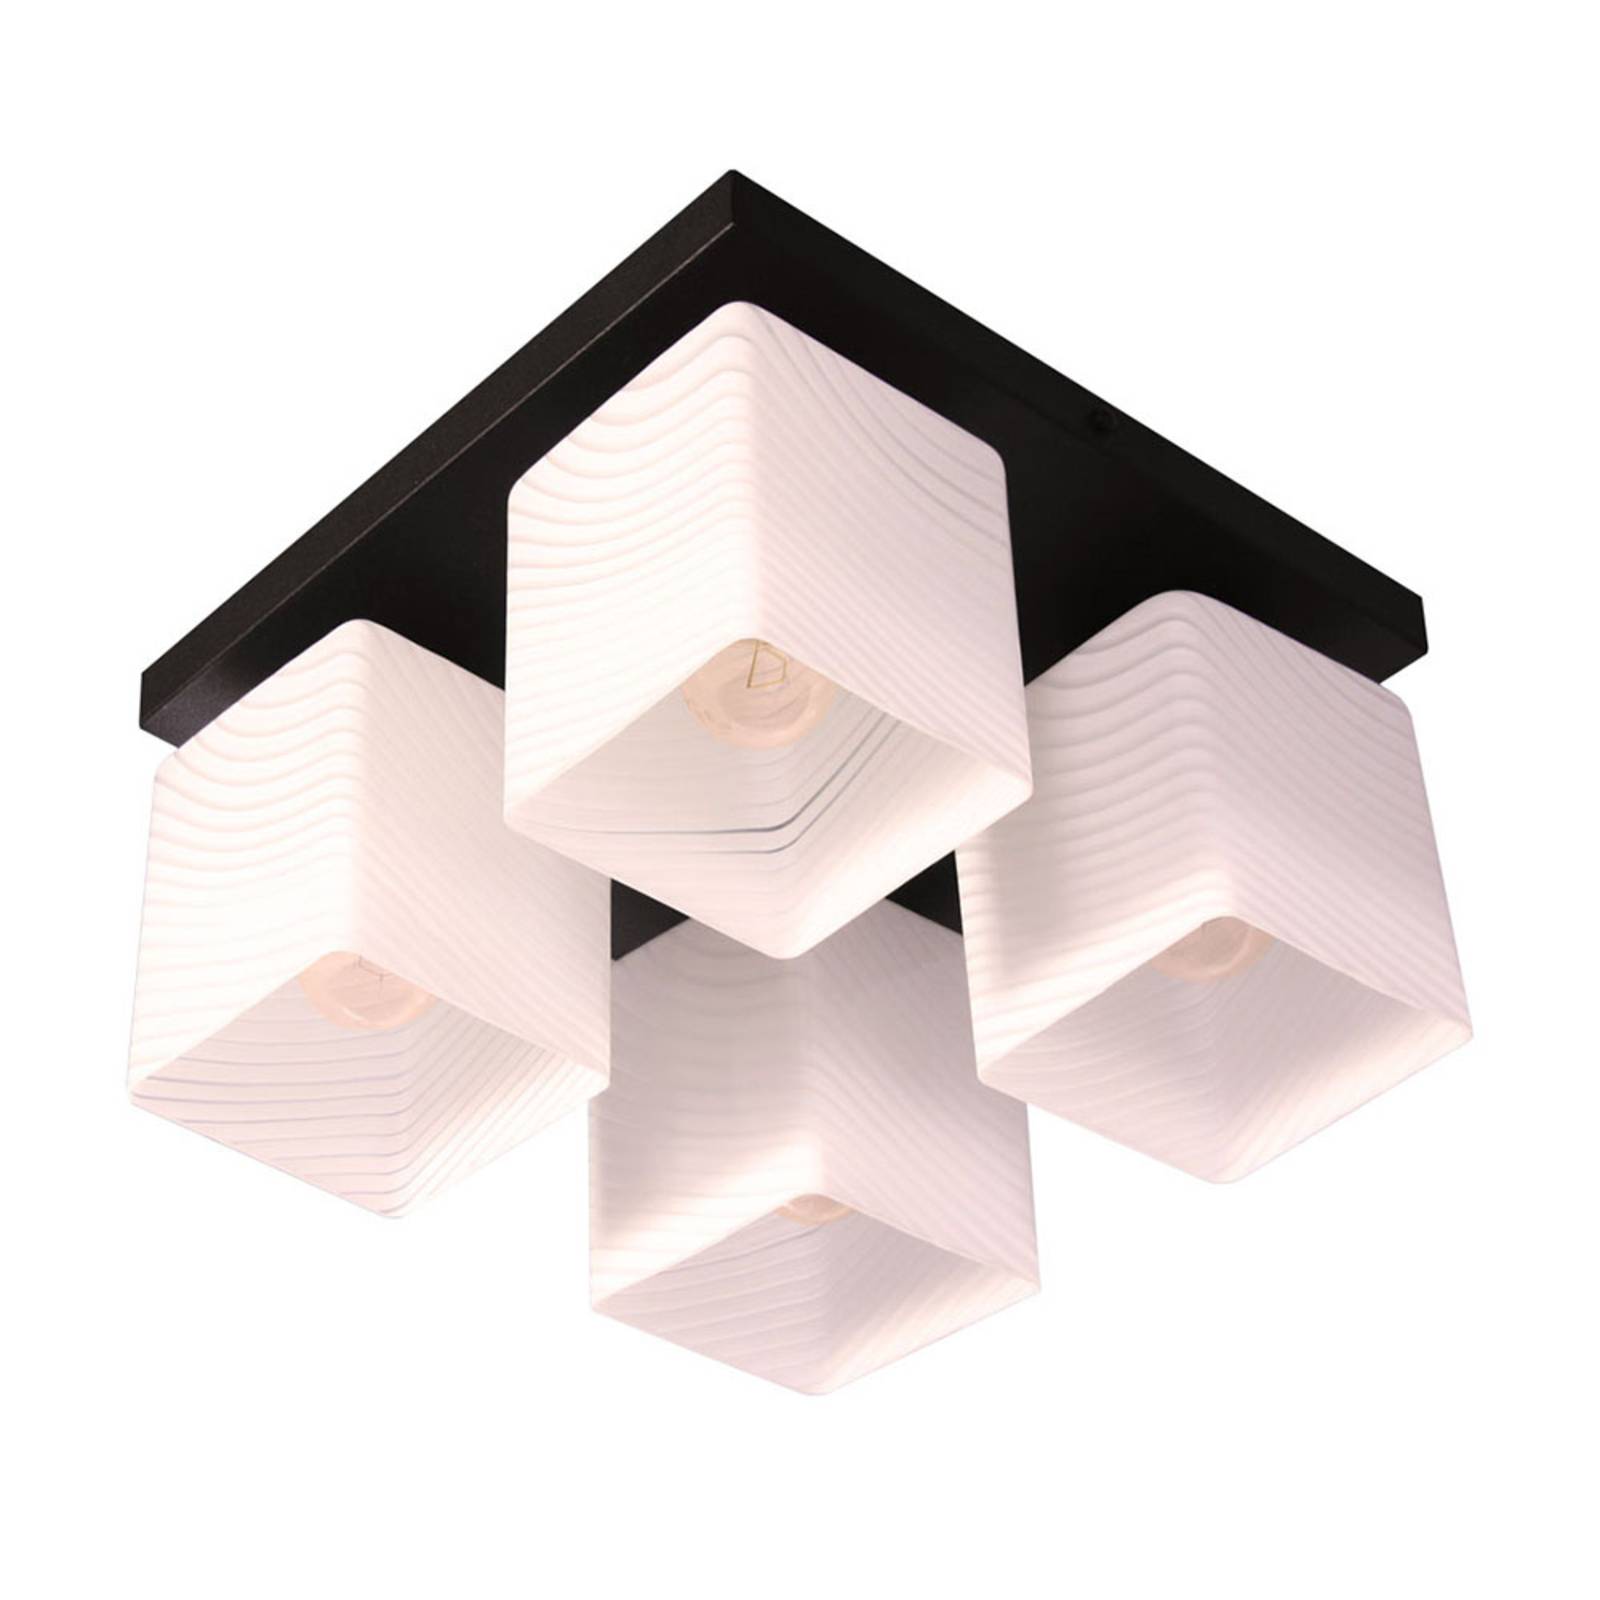 Vega ceiling light, four-bulb, black/white